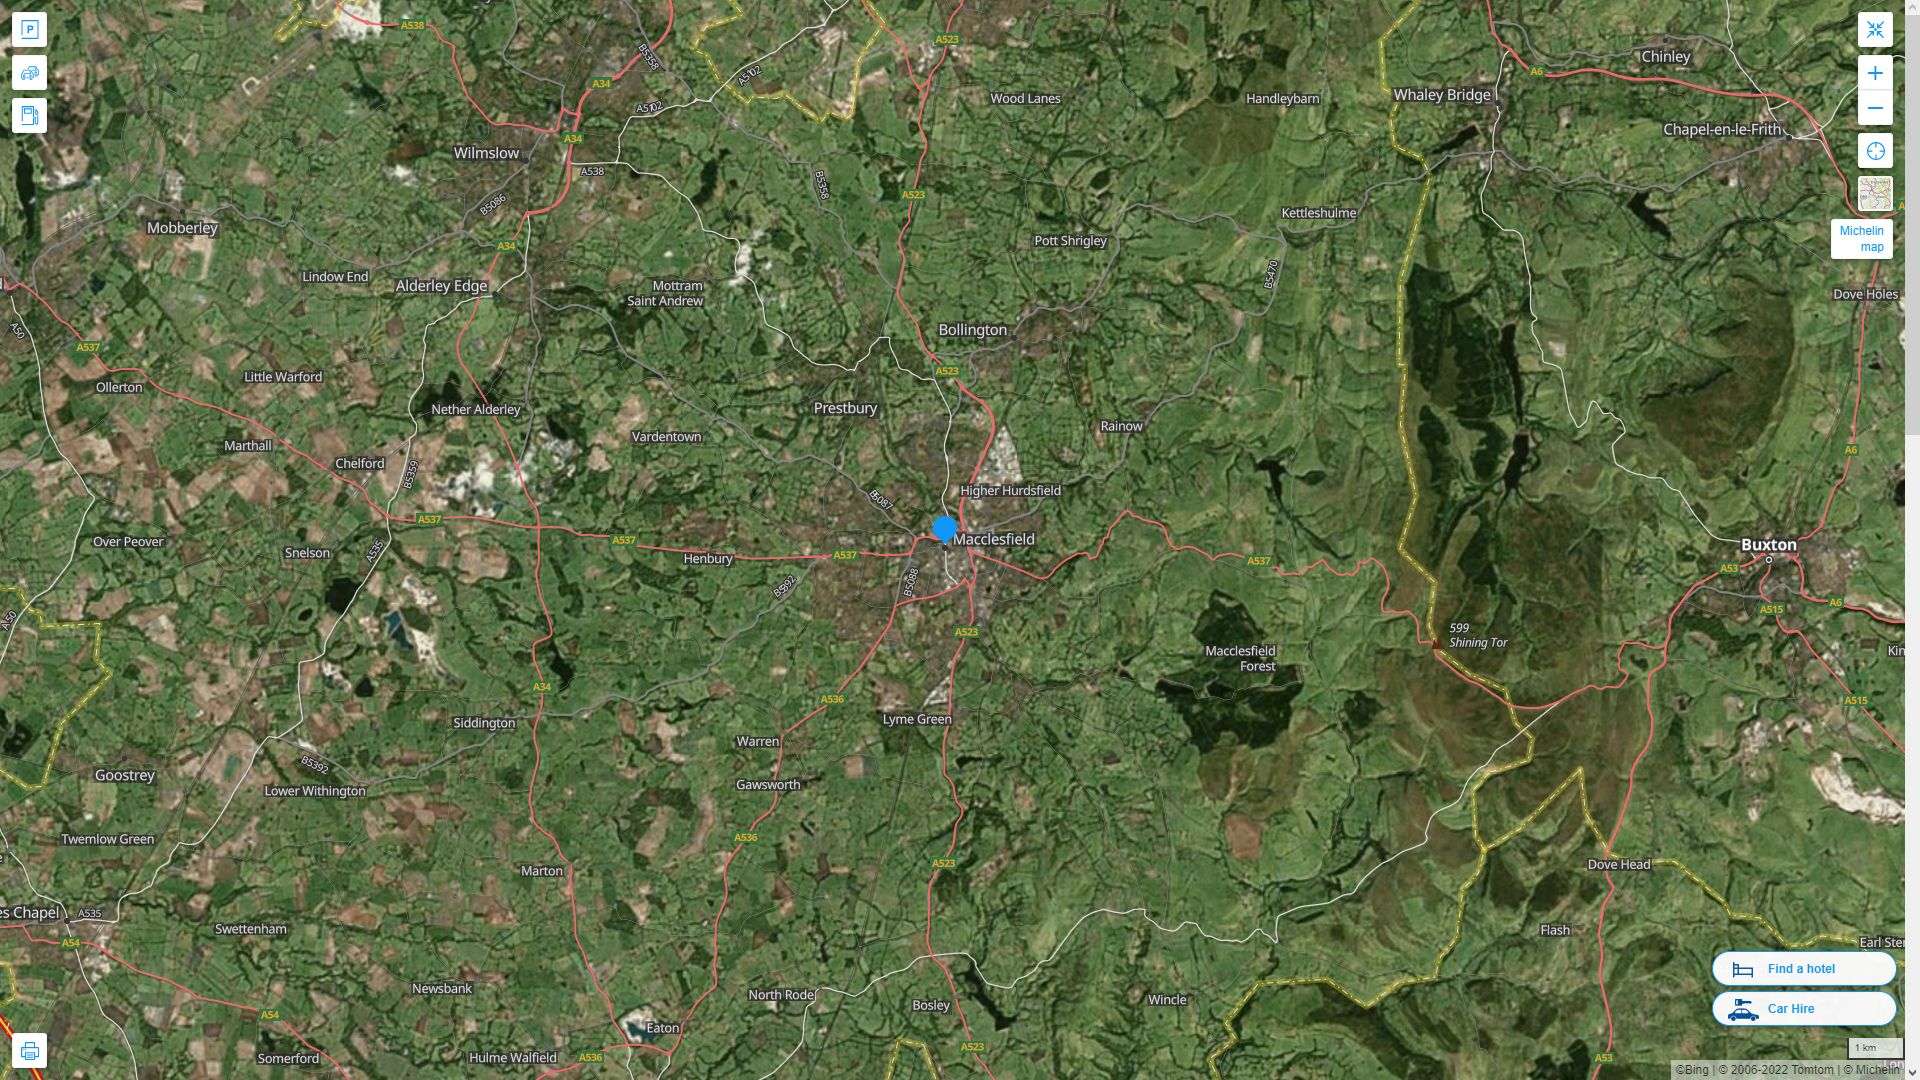 Macclesfield Royaume Uni Autoroute et carte routiere avec vue satellite